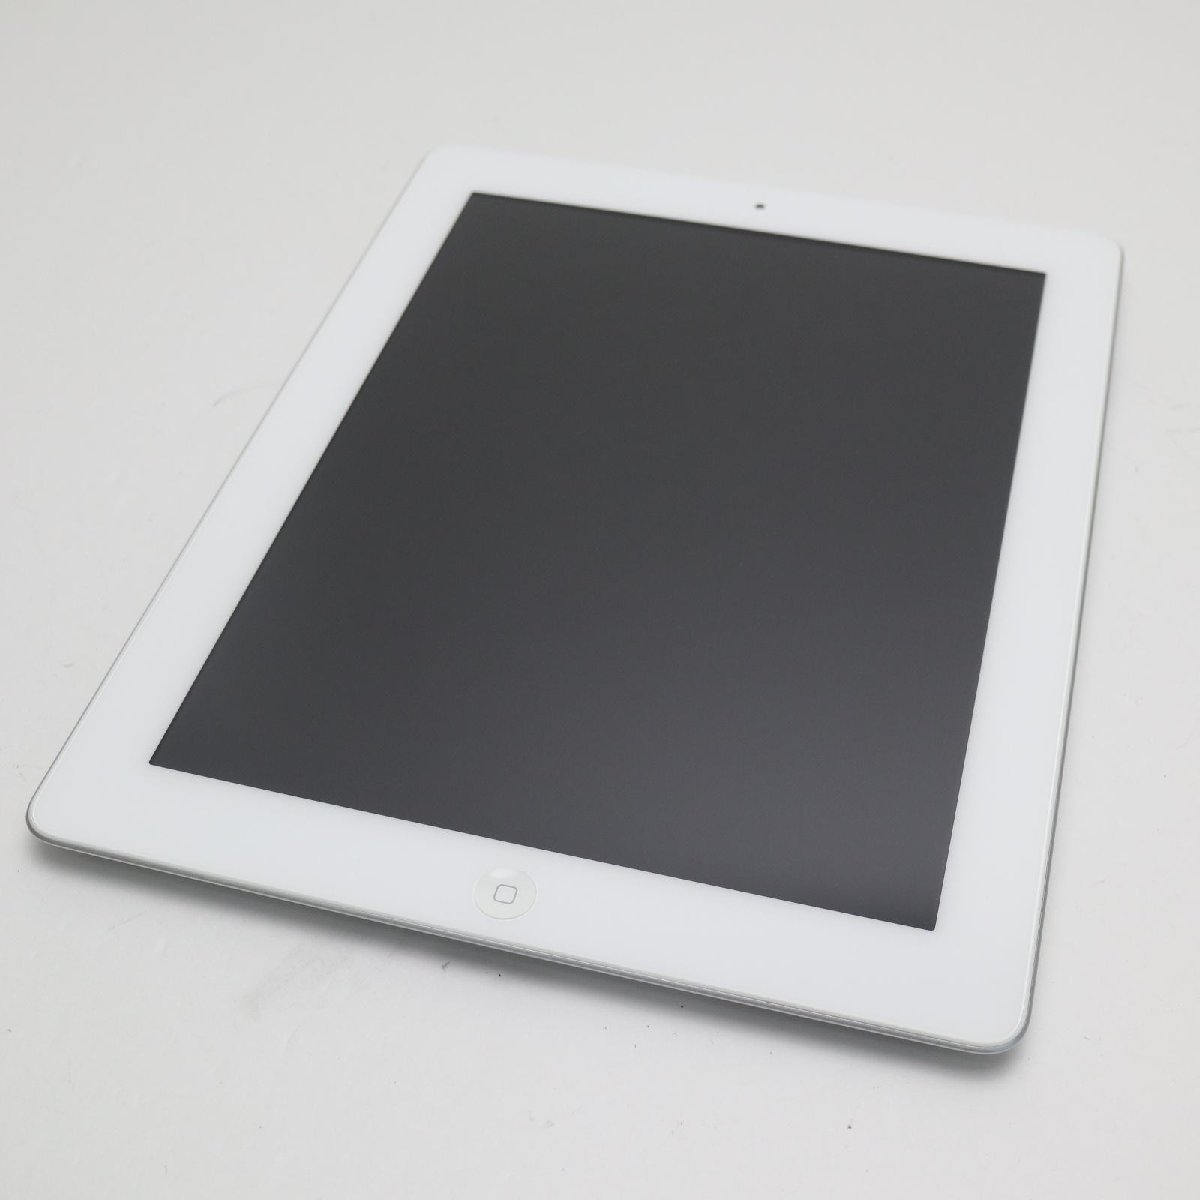 新品同様iPad mini Wi-Fi16GB ホワイト即日発送タブレットApple 本体